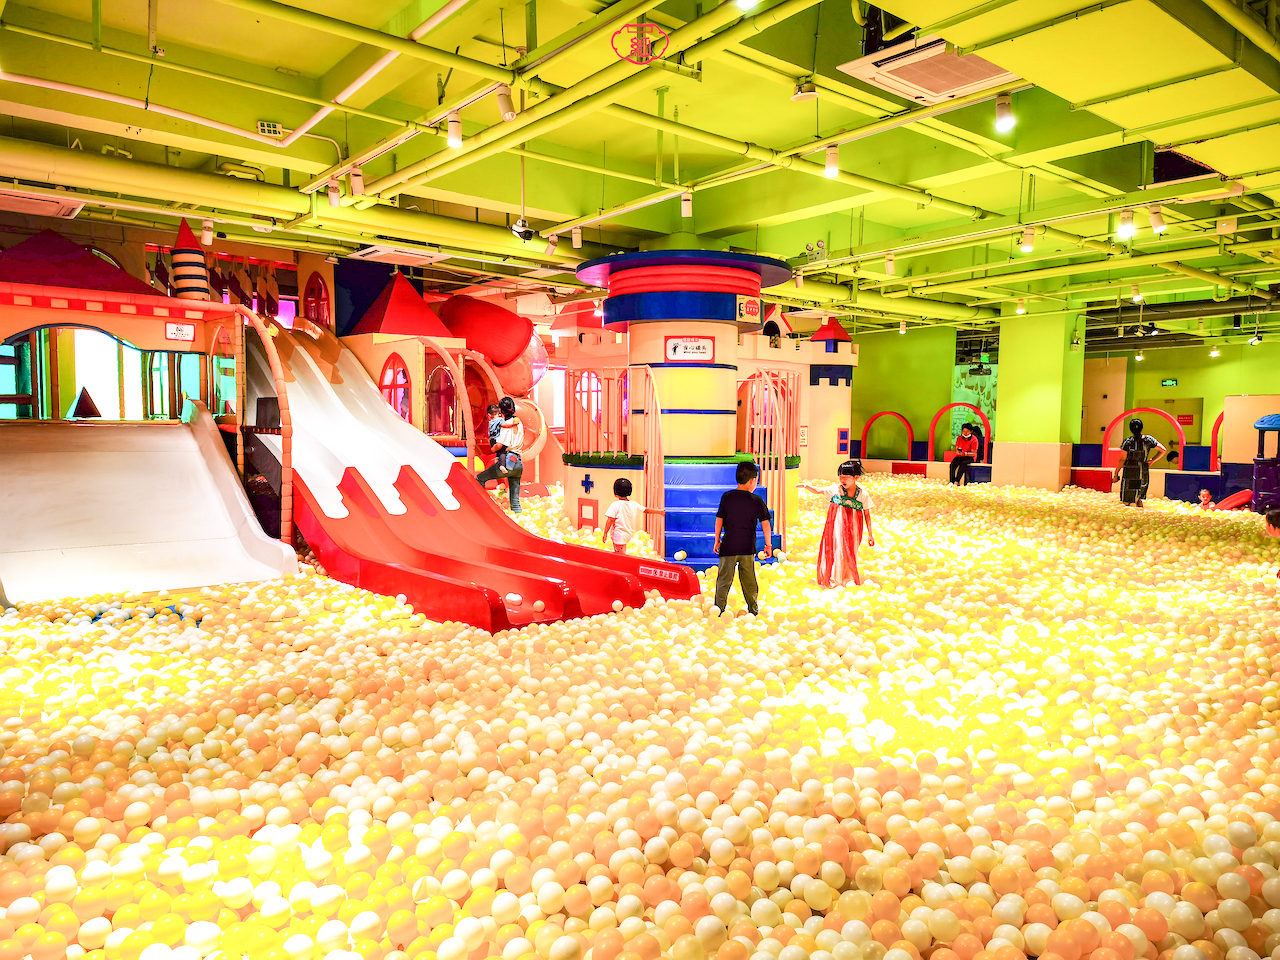 上海宝燕乐园约2万平米的遛娃圣地5层楼不同主题可玩一天